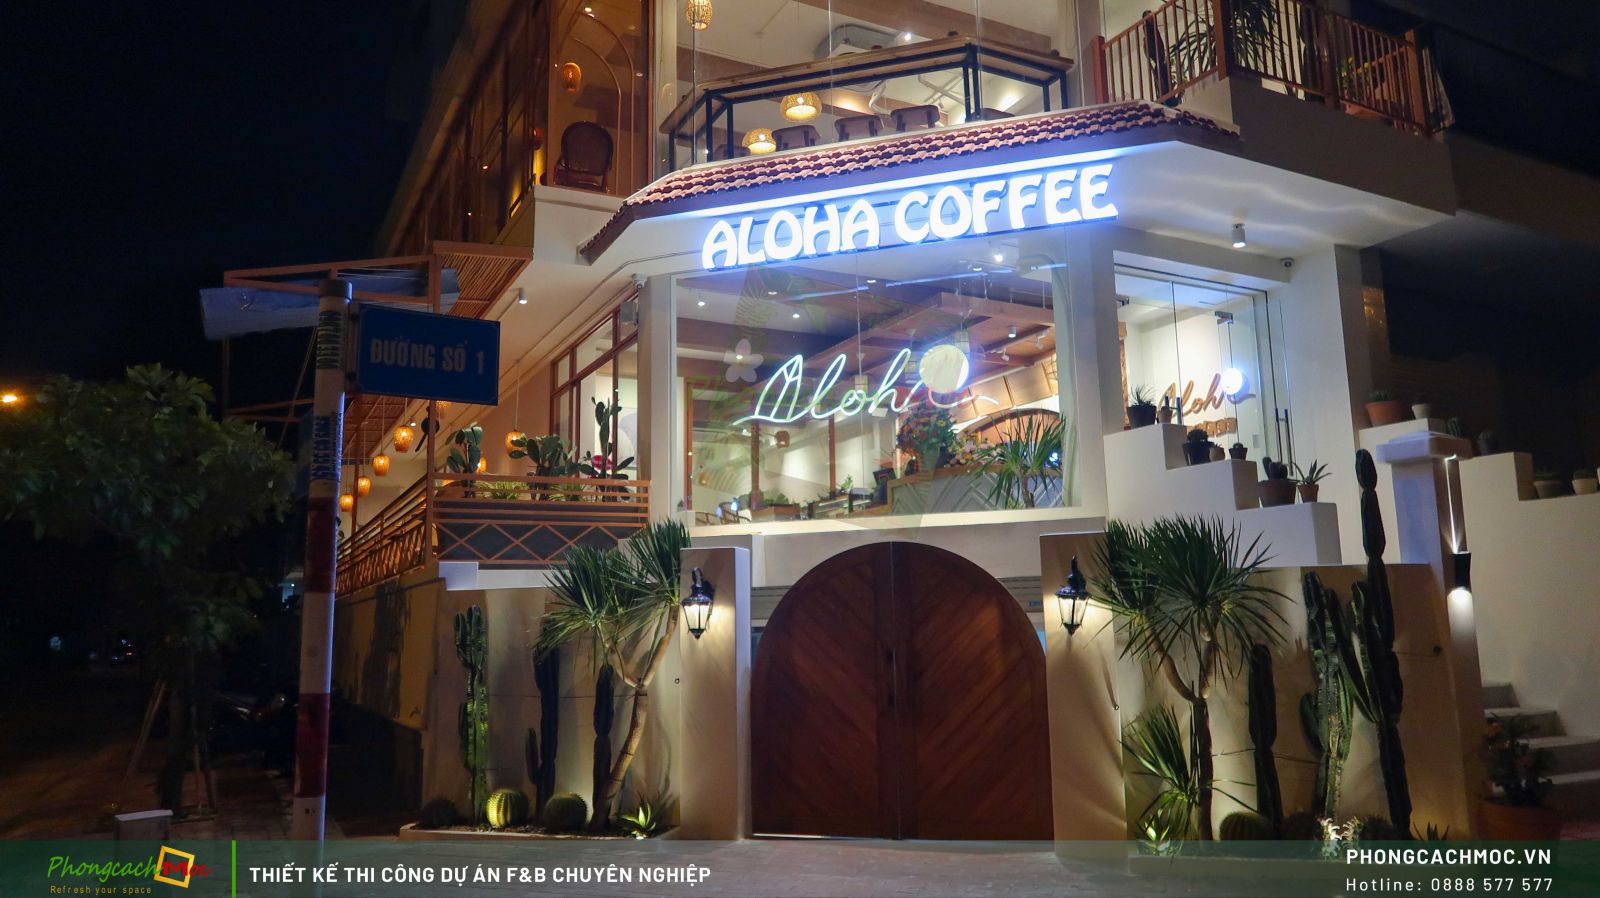 Aloha Coffee quận 7 - Hình ảnh hoàn thiện